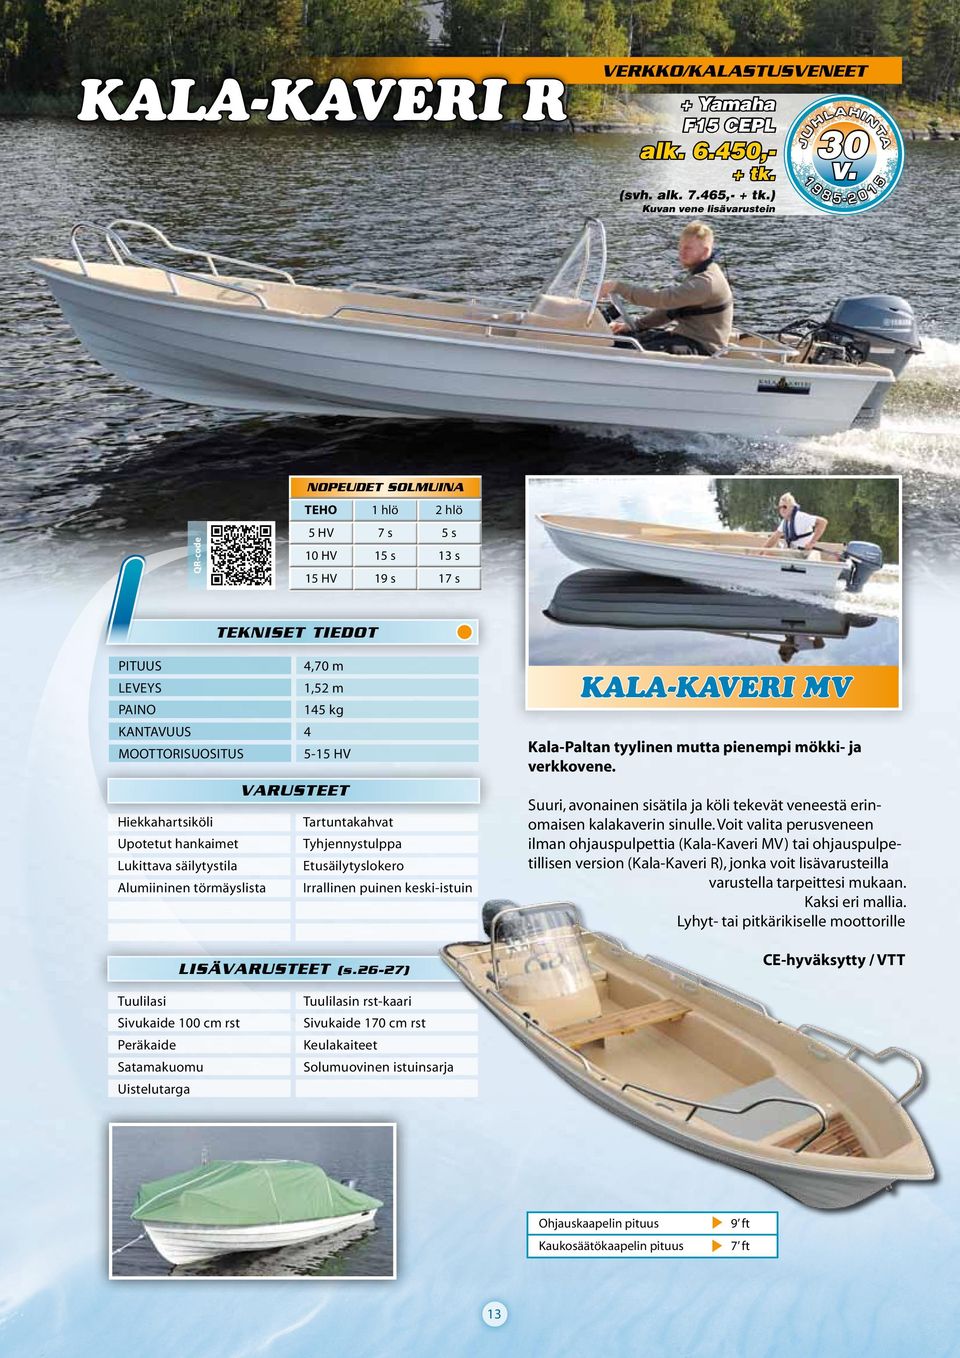 törmäyslista Irrallinen puinen keski-istuin LISÄ (s.26-27) KALA-KAVERI MV Kala-Paltan tyylinen mutta pienempi mökki- ja verkkovene.